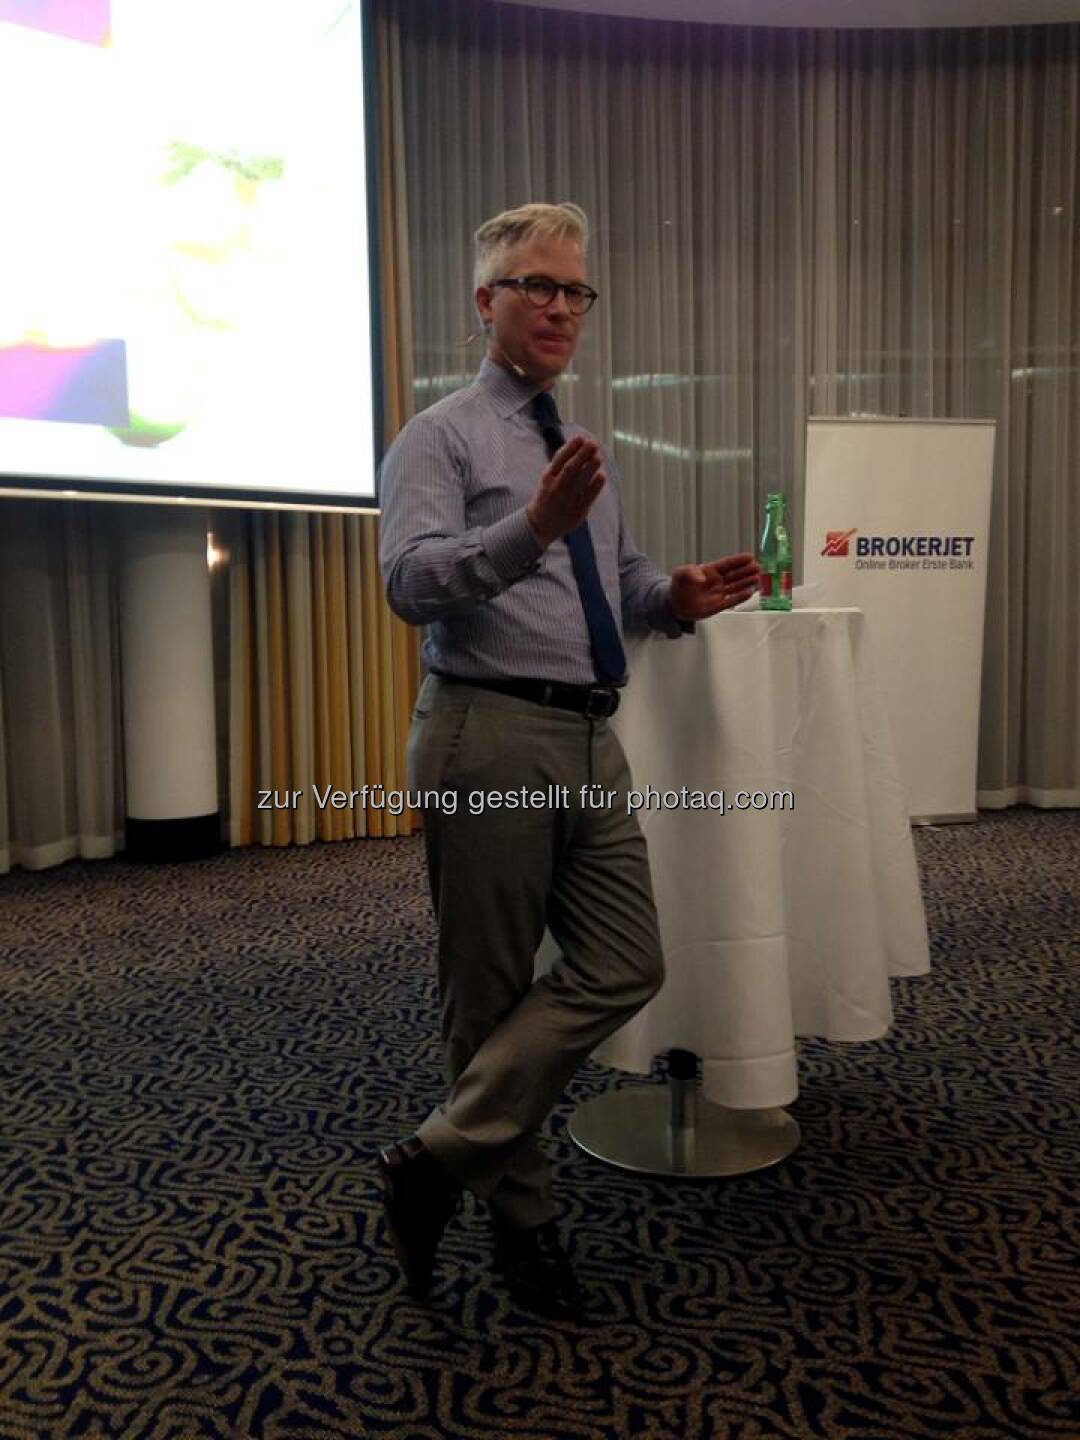 Wallstreet-Experte Markus Koch war am 28.10.2014 Gast von Brokerjet und sprach in seinem Vortrag über aktuelle Markt-Trends.  Source: http://twitter.com/brokerjet